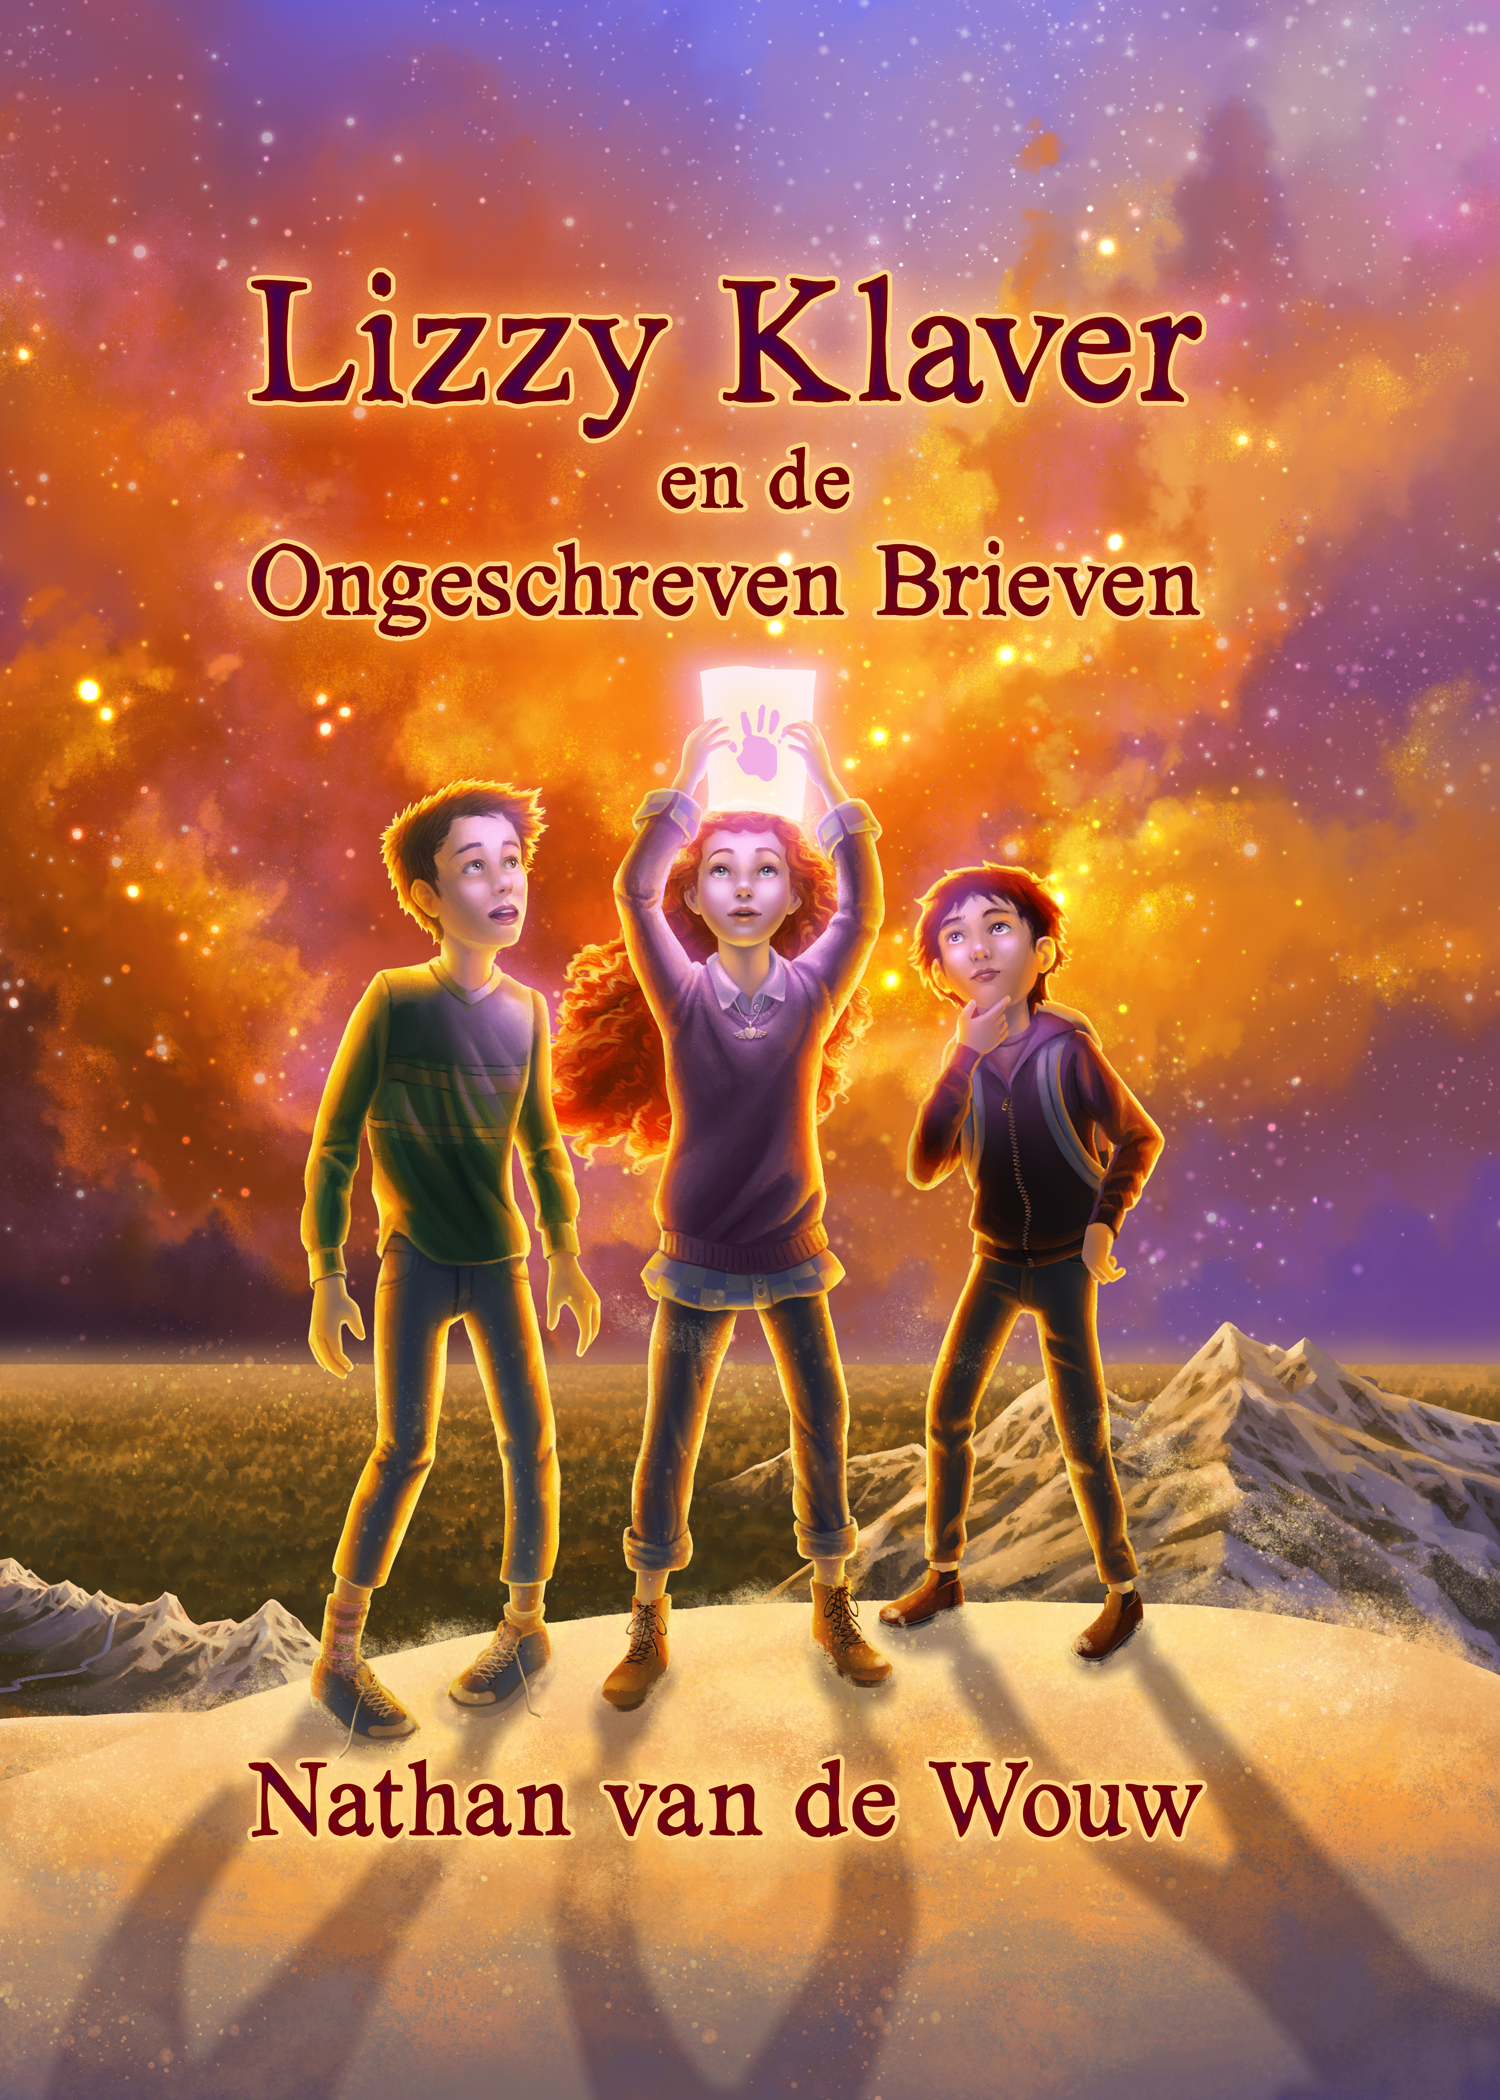 Lizzy-Klaver-en-de-verdwenen-brieven-jeugdboek-redactie-Jacqueline-Zirkzee